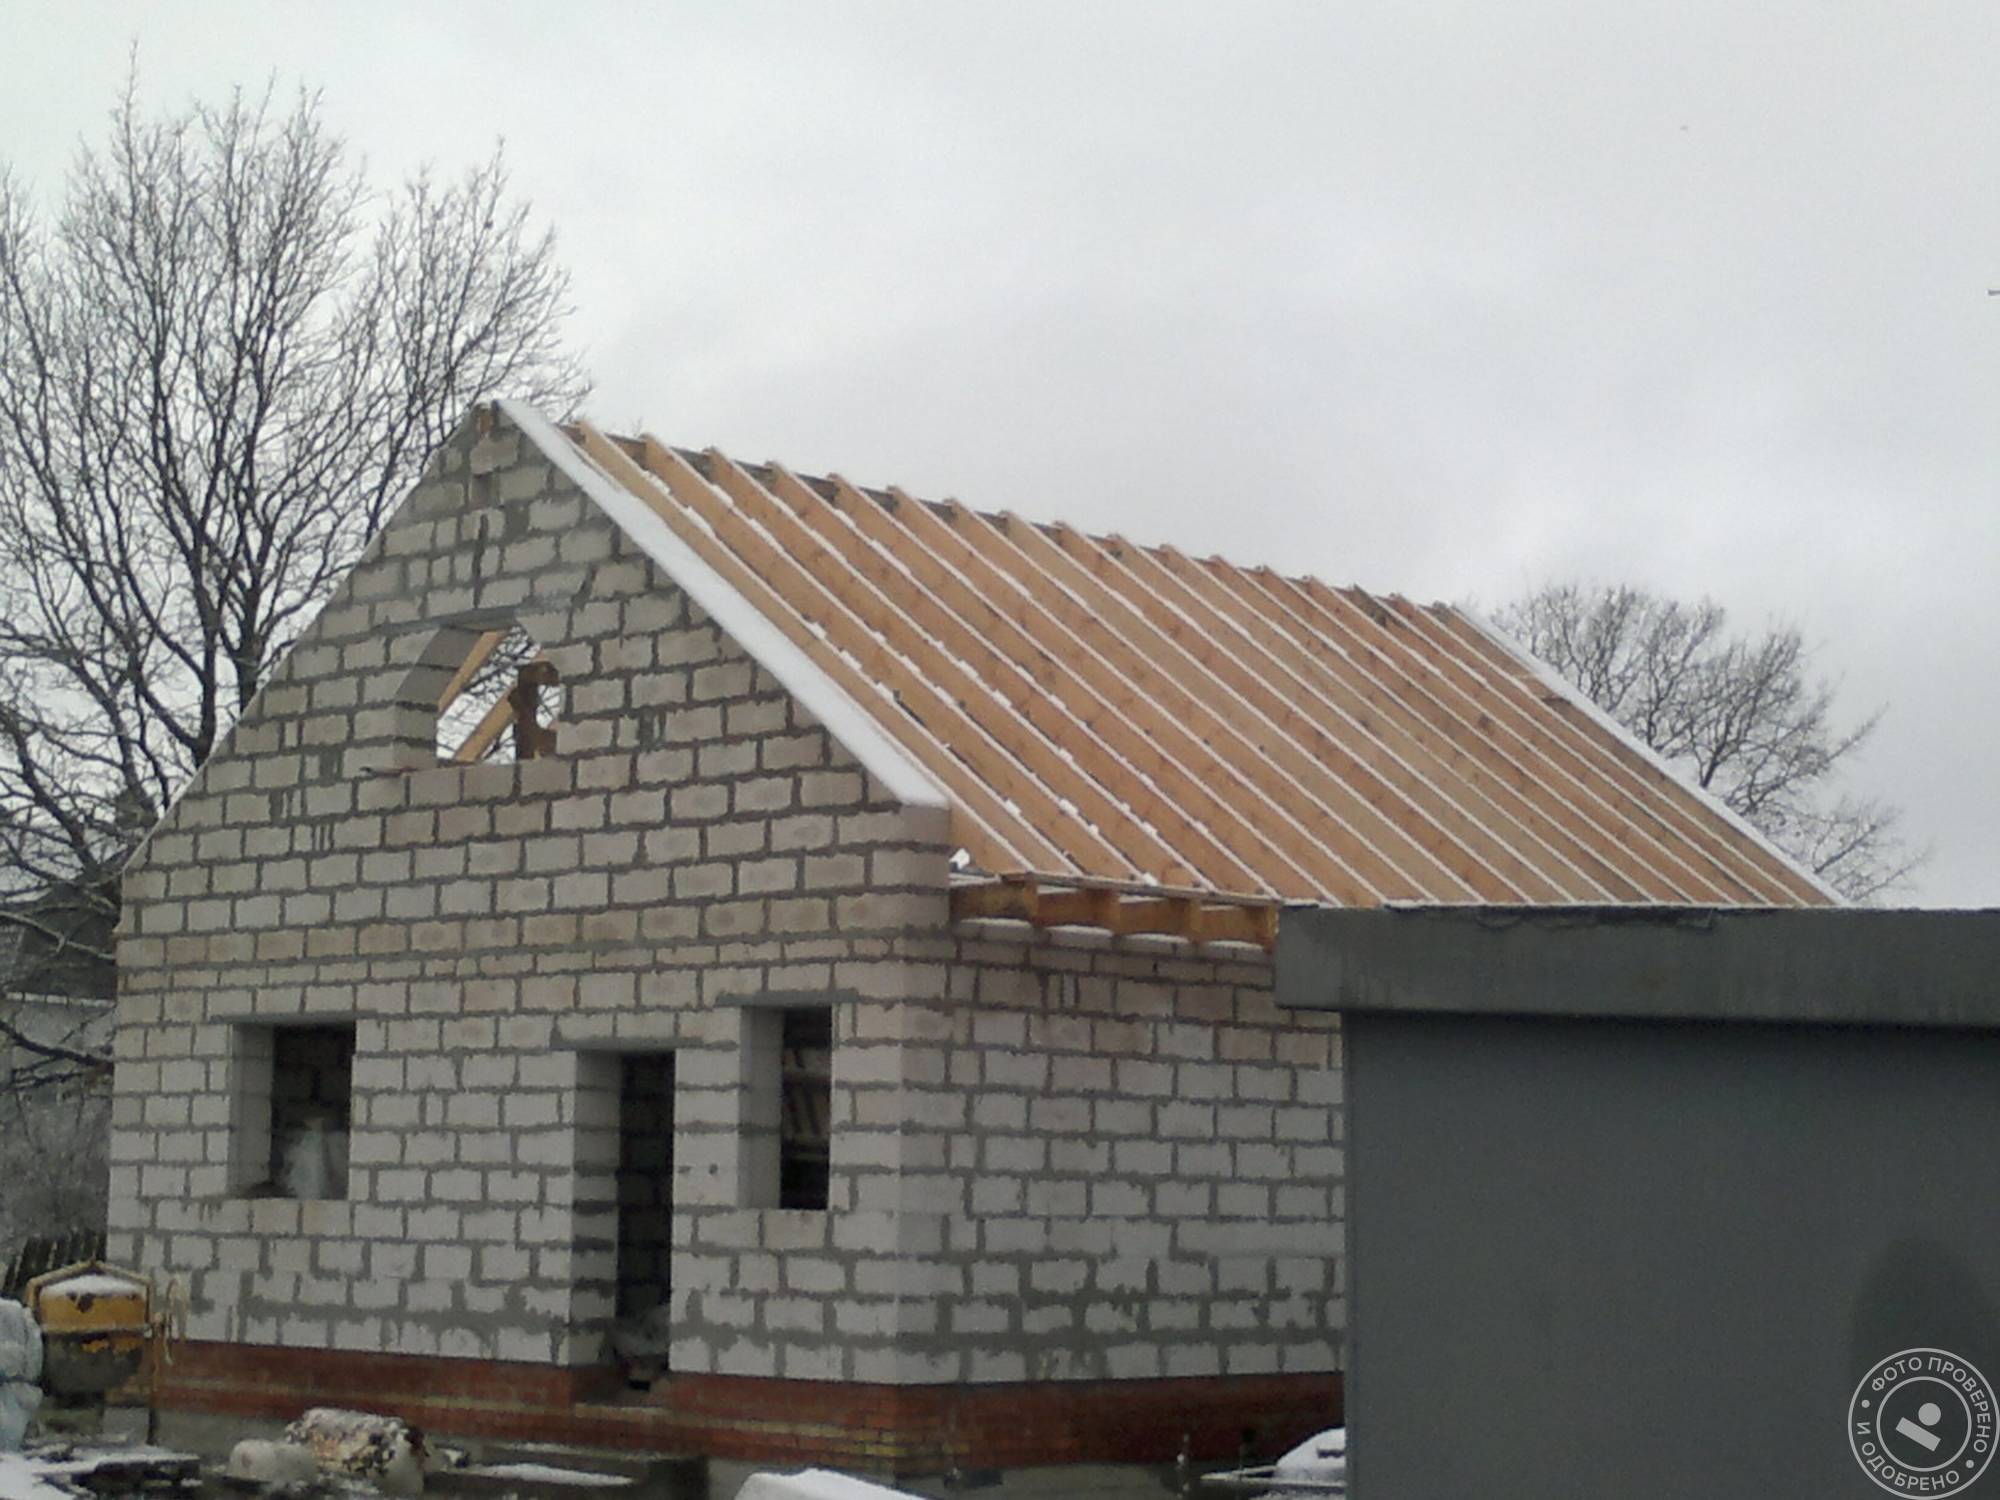 Стропильная система фронтонами: нюансы сооружения крыш по фронтонным стенкам